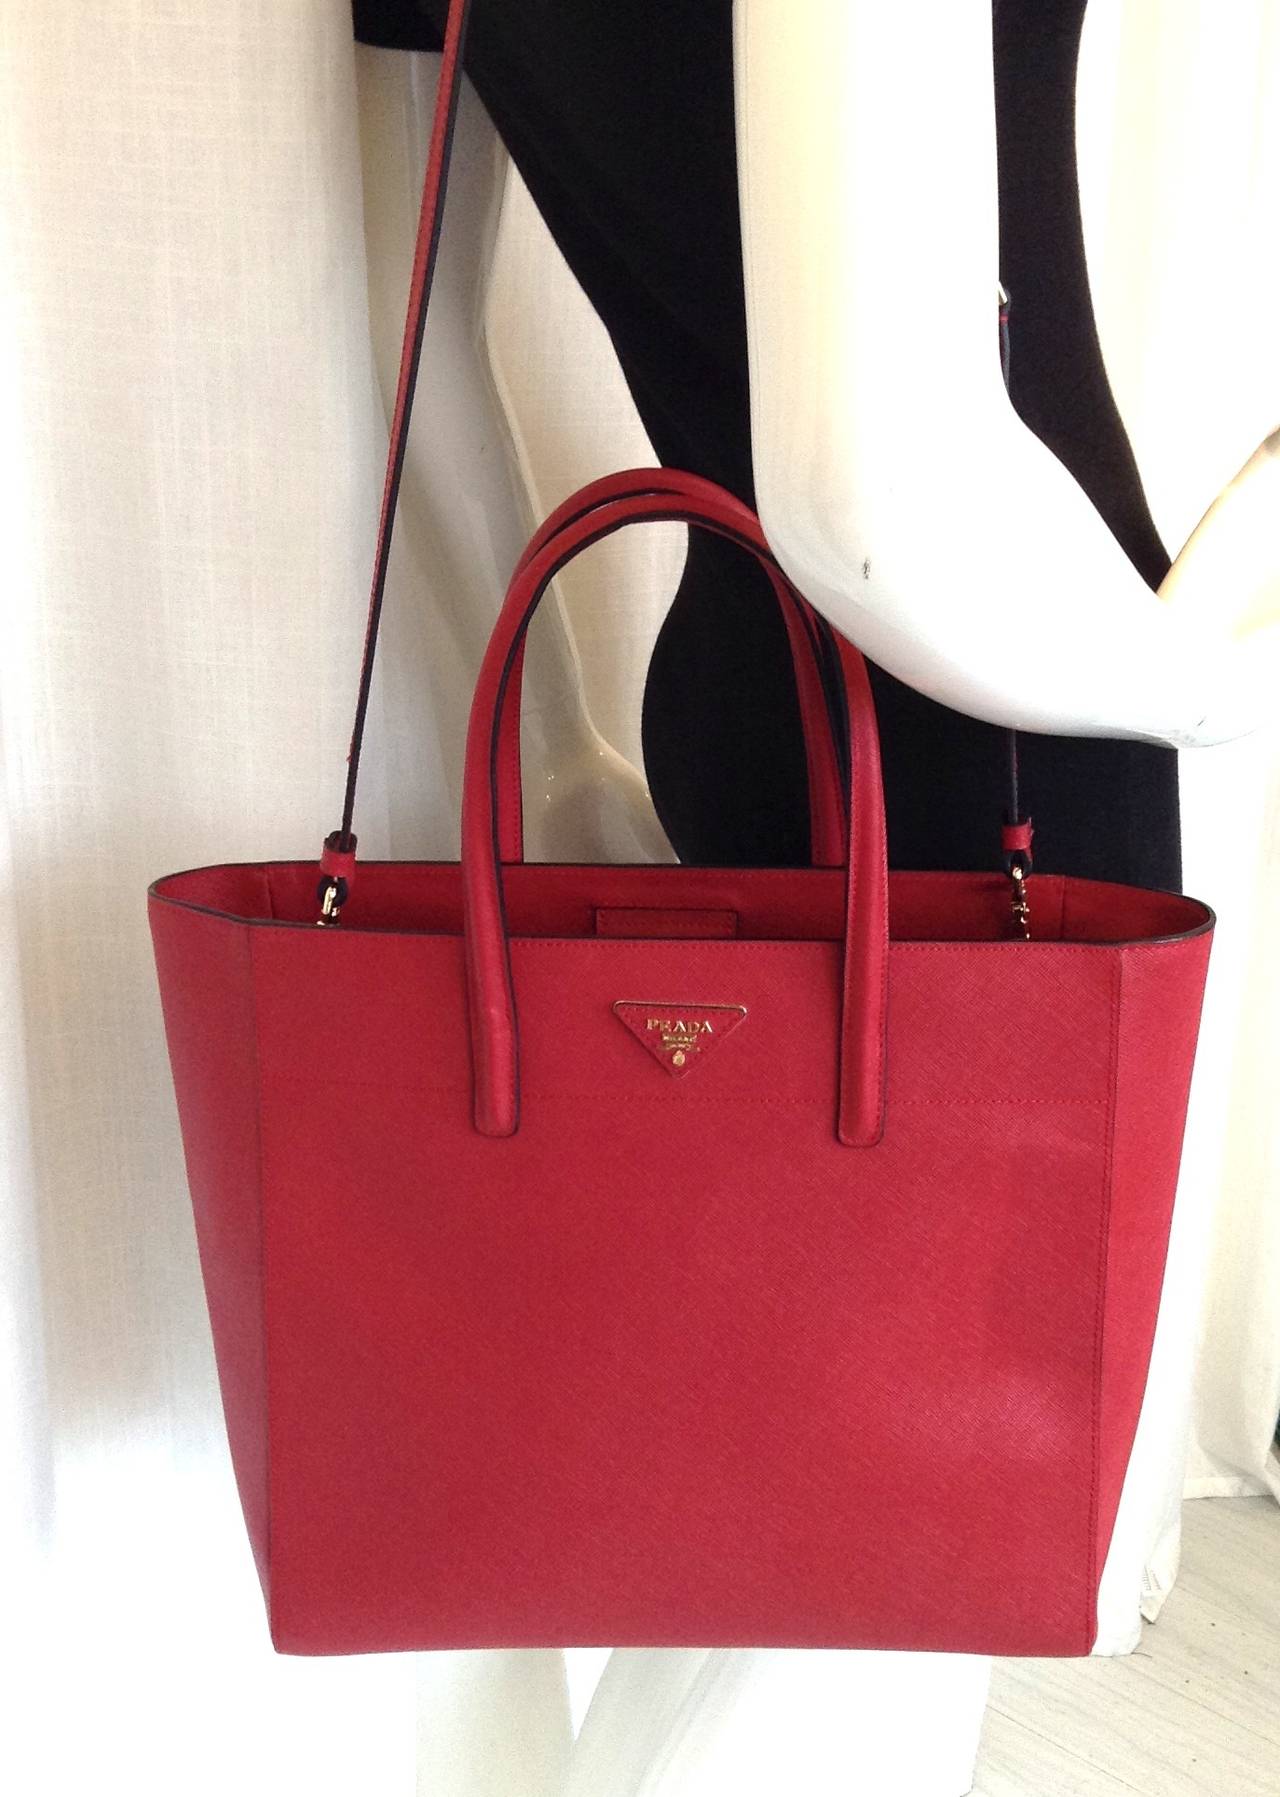 Women's 2013 PRADA Saffiano Trapeze tote bag in Lipstick Red GHW $1800 For Sale